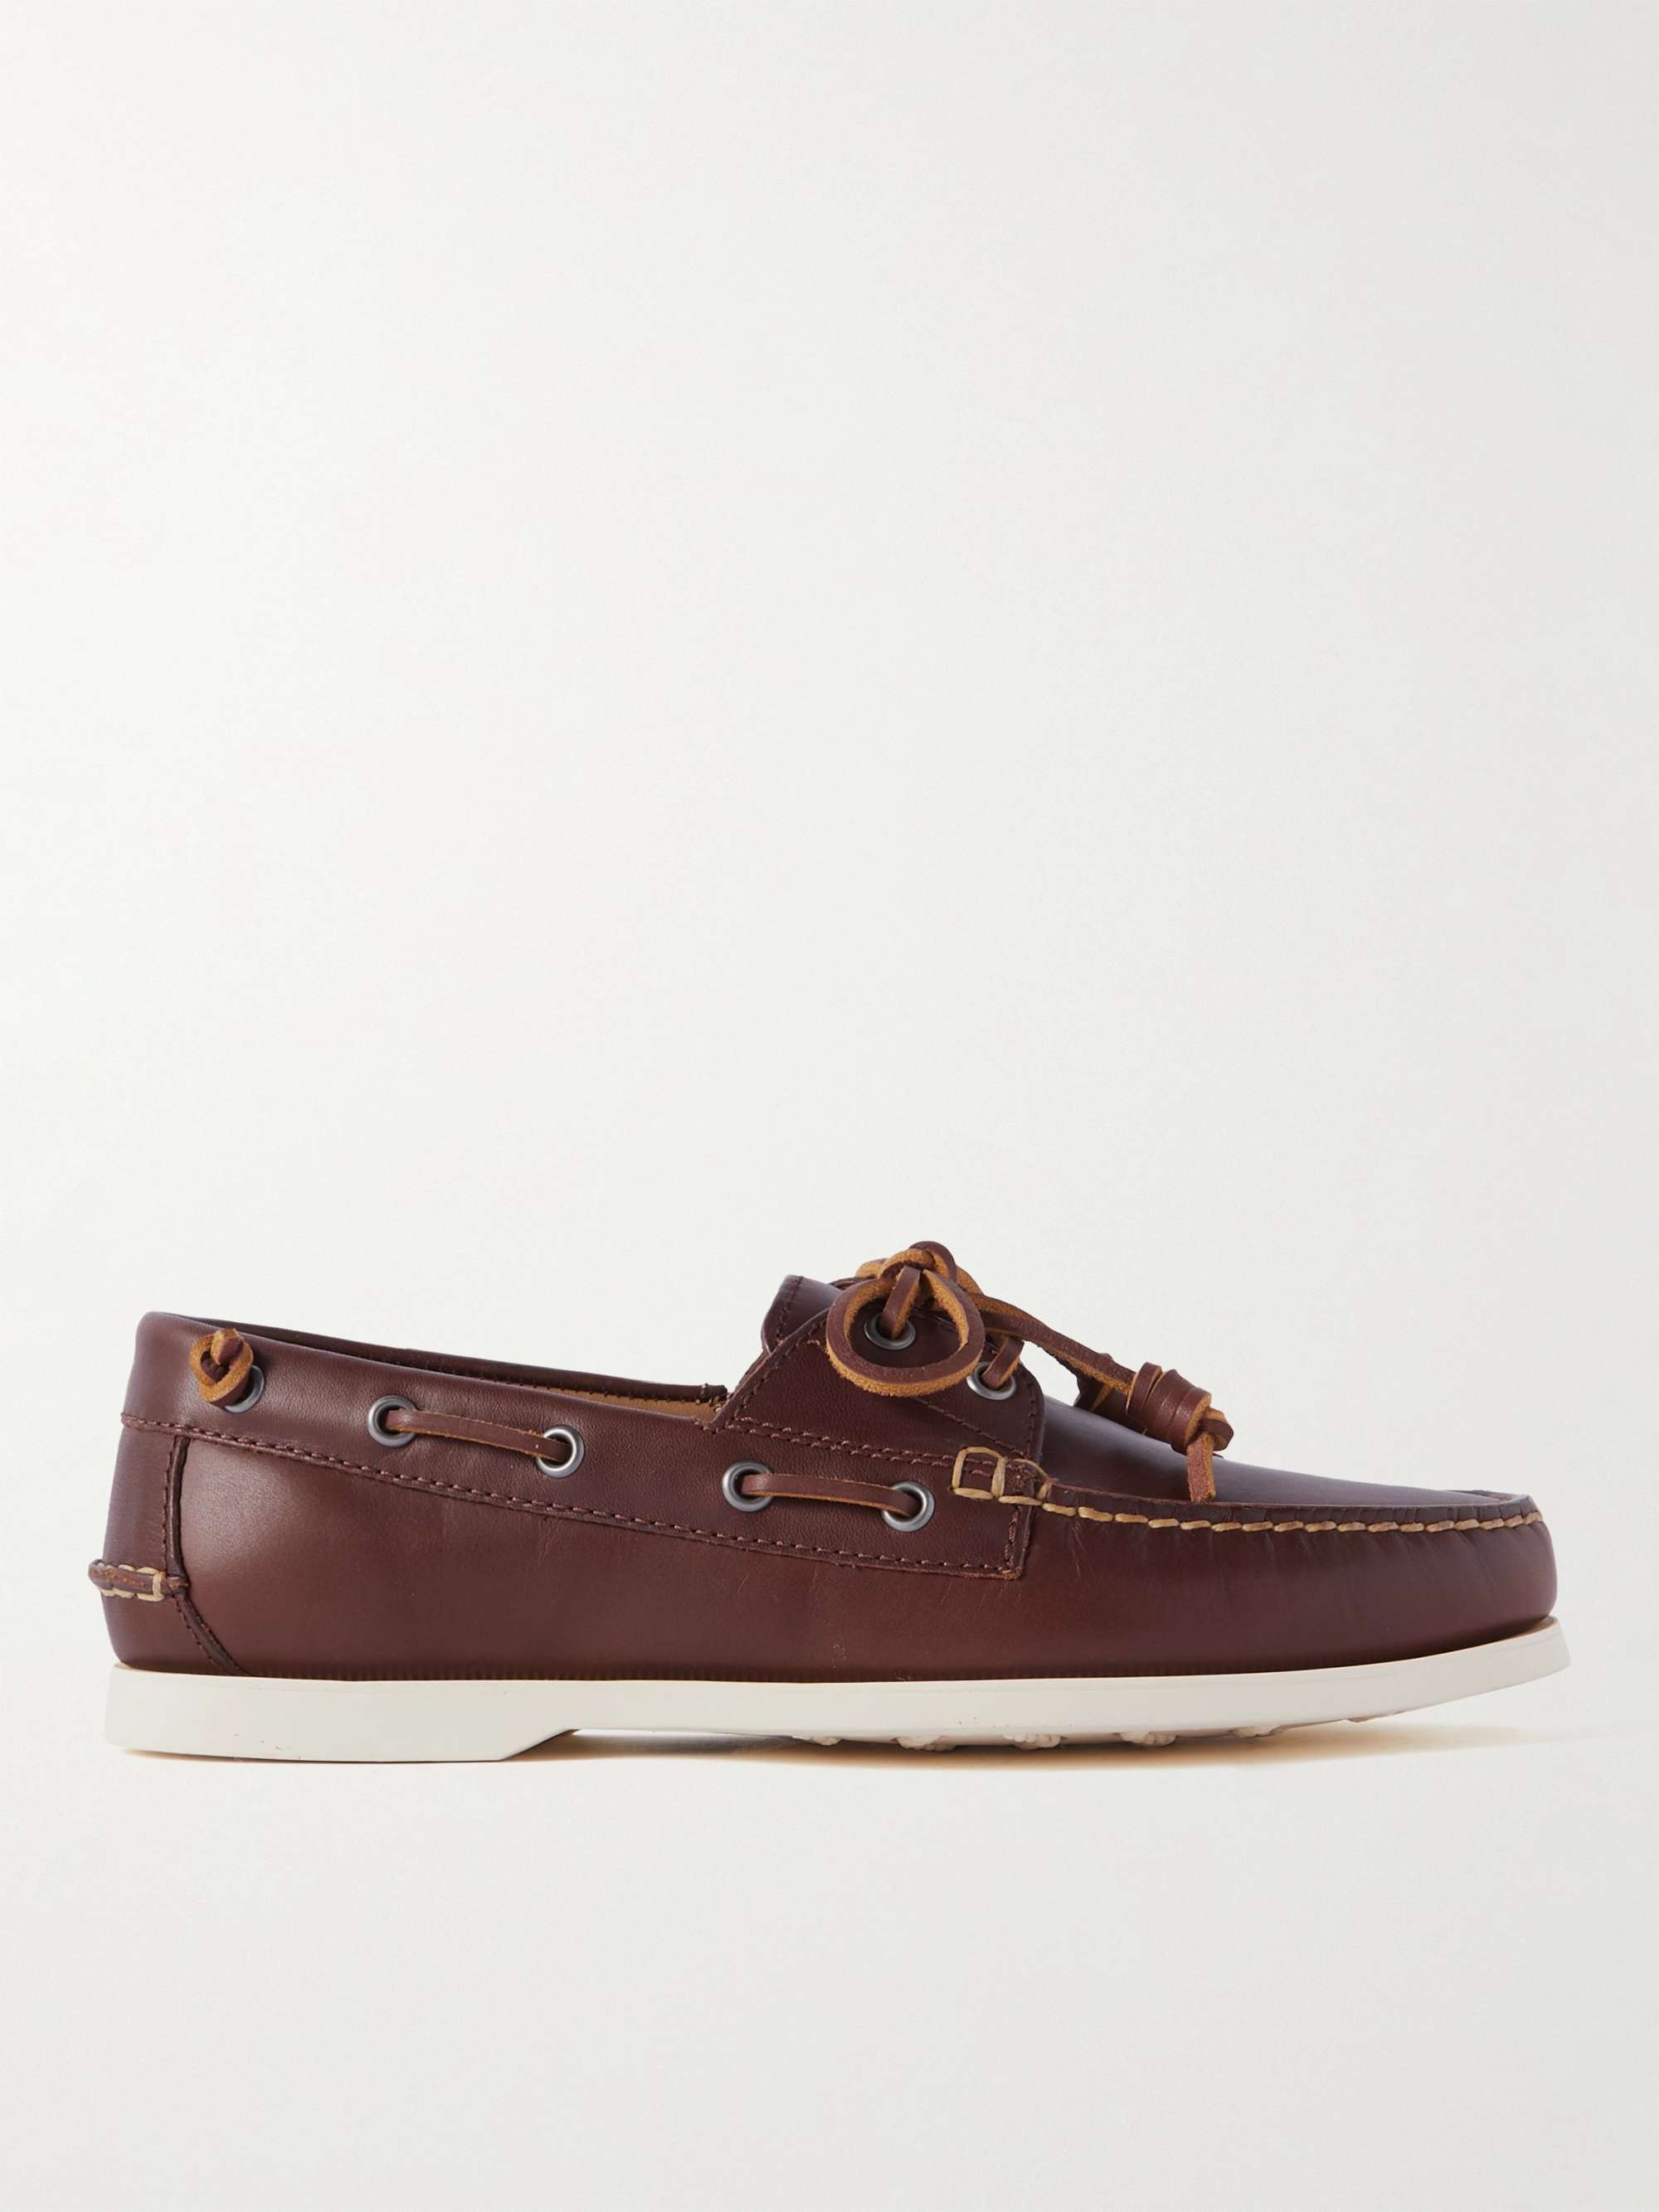 POLO RALPH LAUREN Merton Leather Boat Shoes for Men | MR PORTER